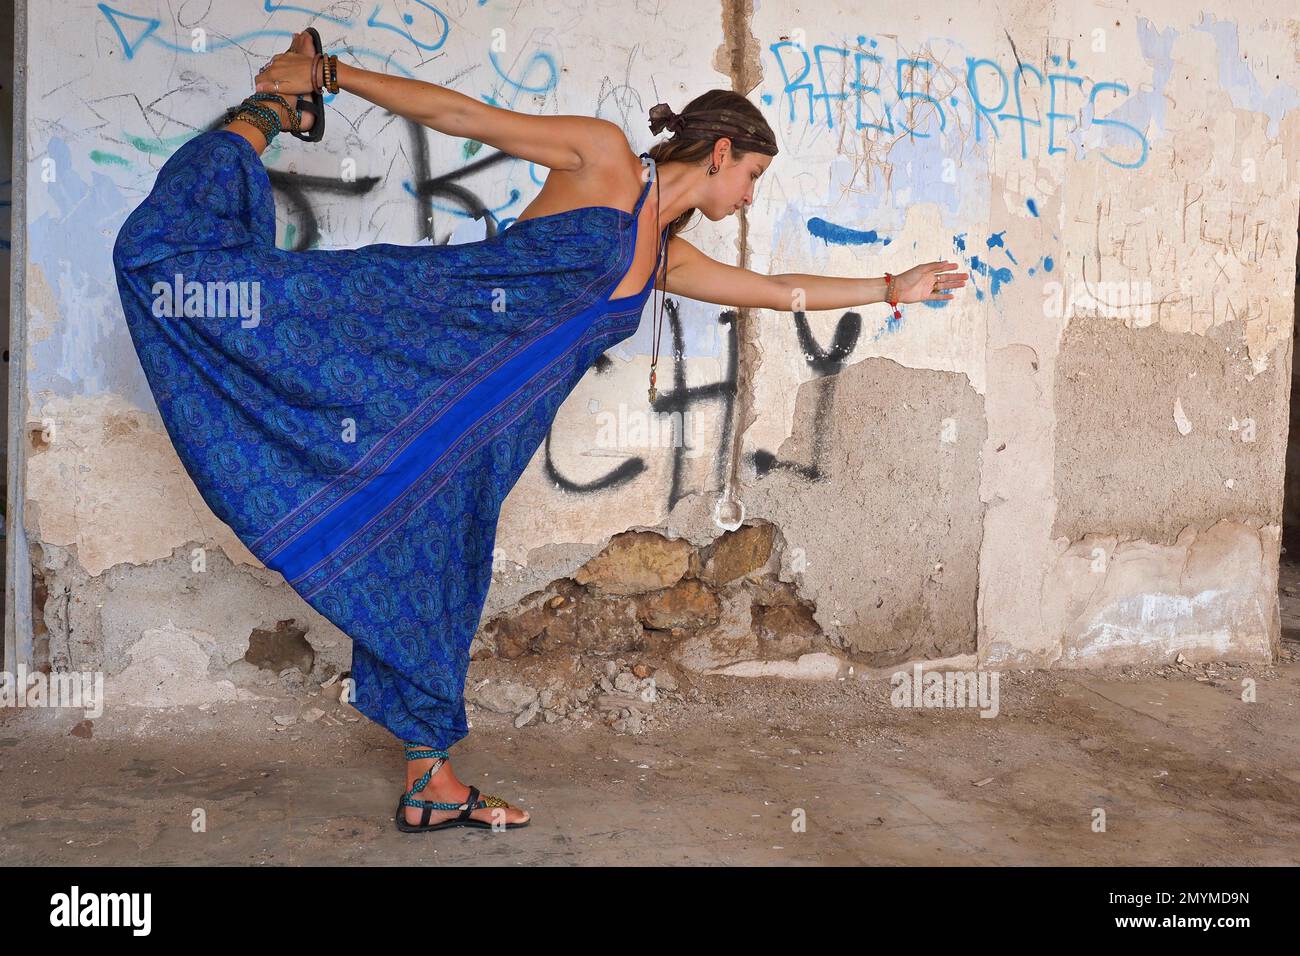 La mujer joven con la diadema hace ejercicio de yoga en la vieja casa delante de la pared con graffiti Foto de stock